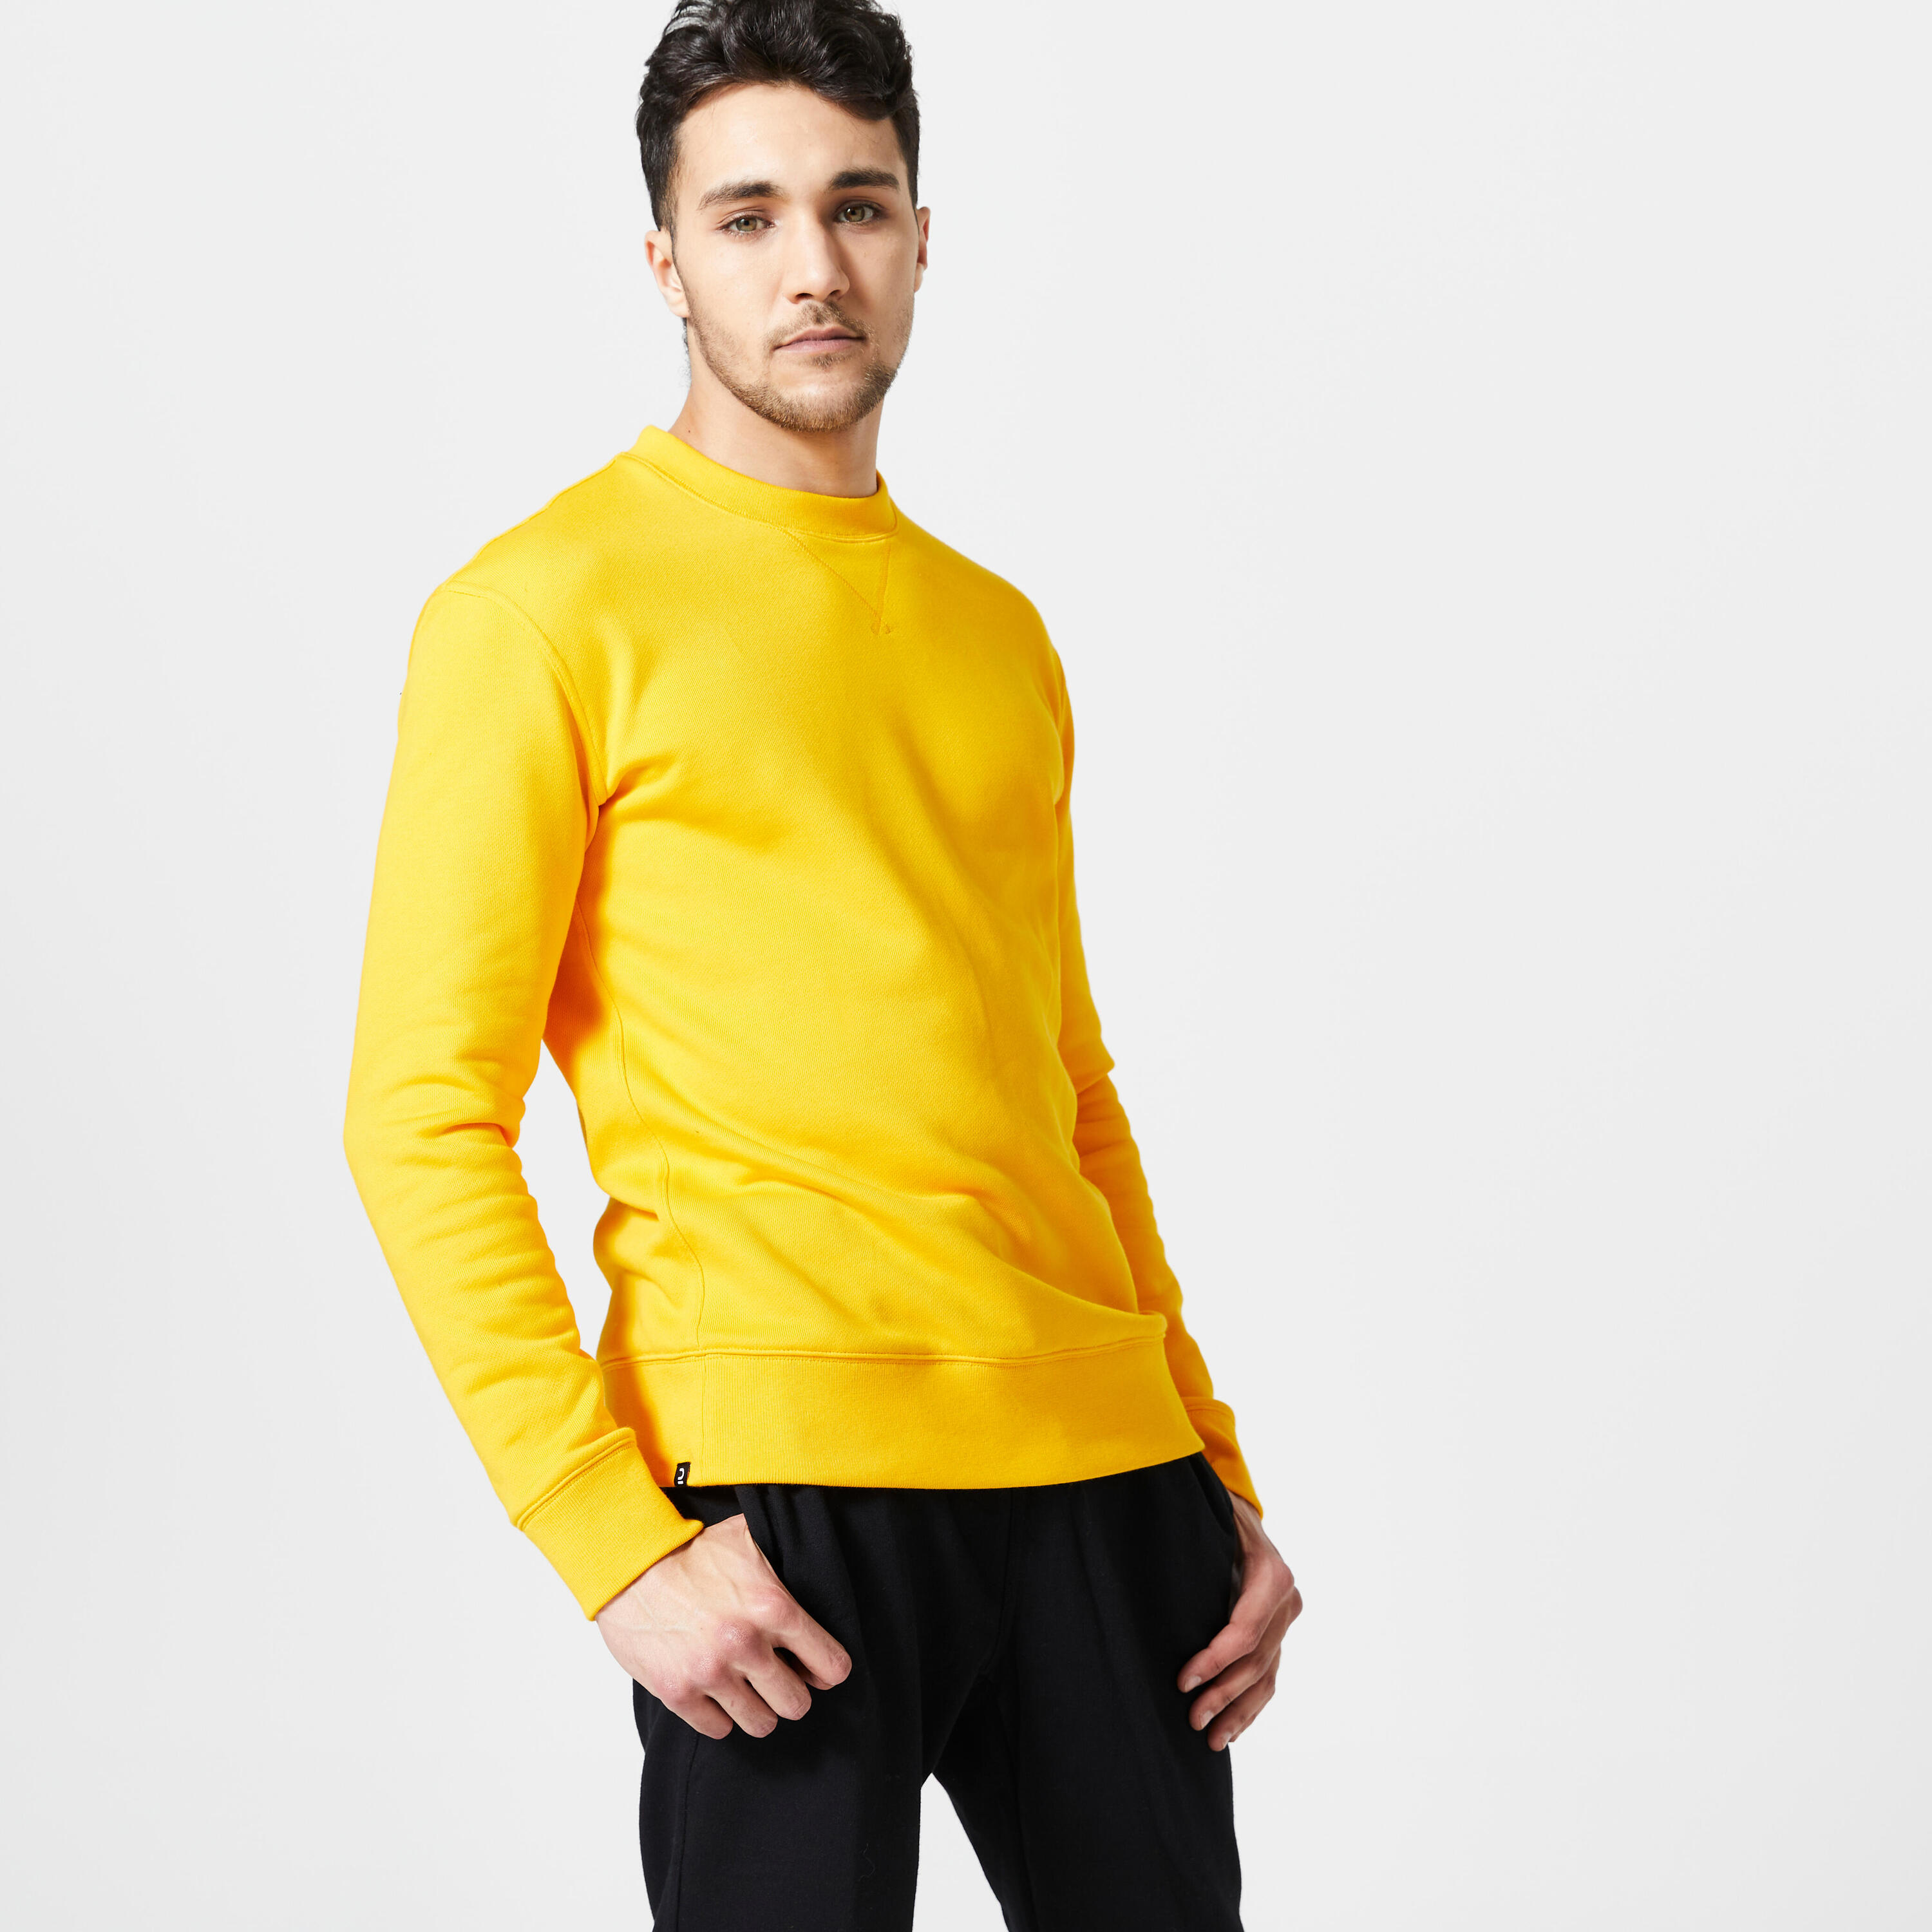 DOMYOS Men's Crew Neck Fitness Sweatshirt 500 Essentials - Yellow